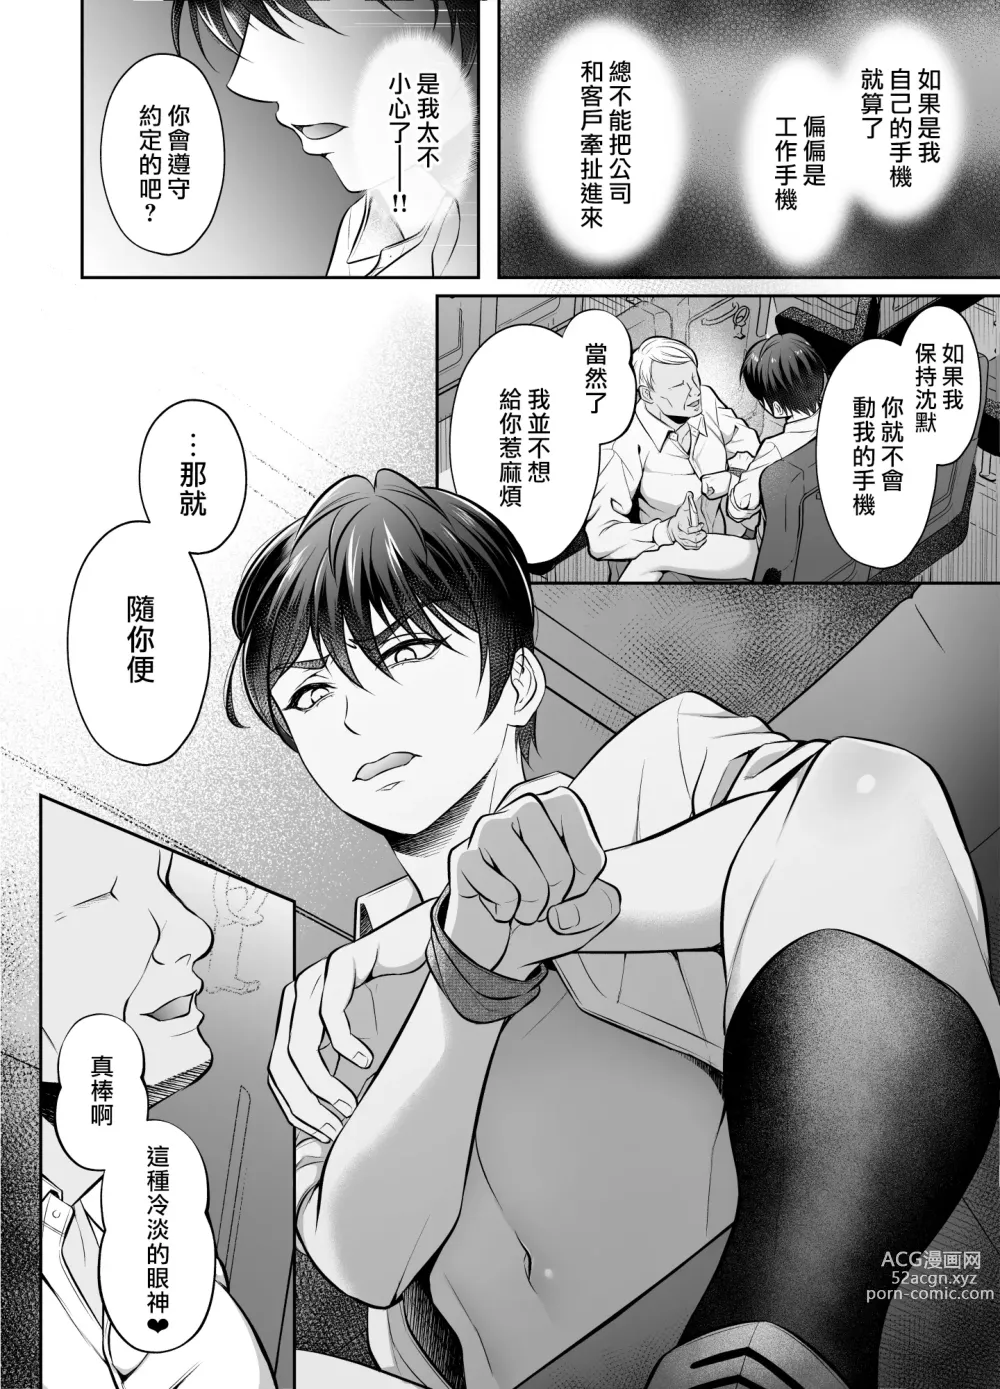 Page 8 of doujinshi 敏感上司公車強姦